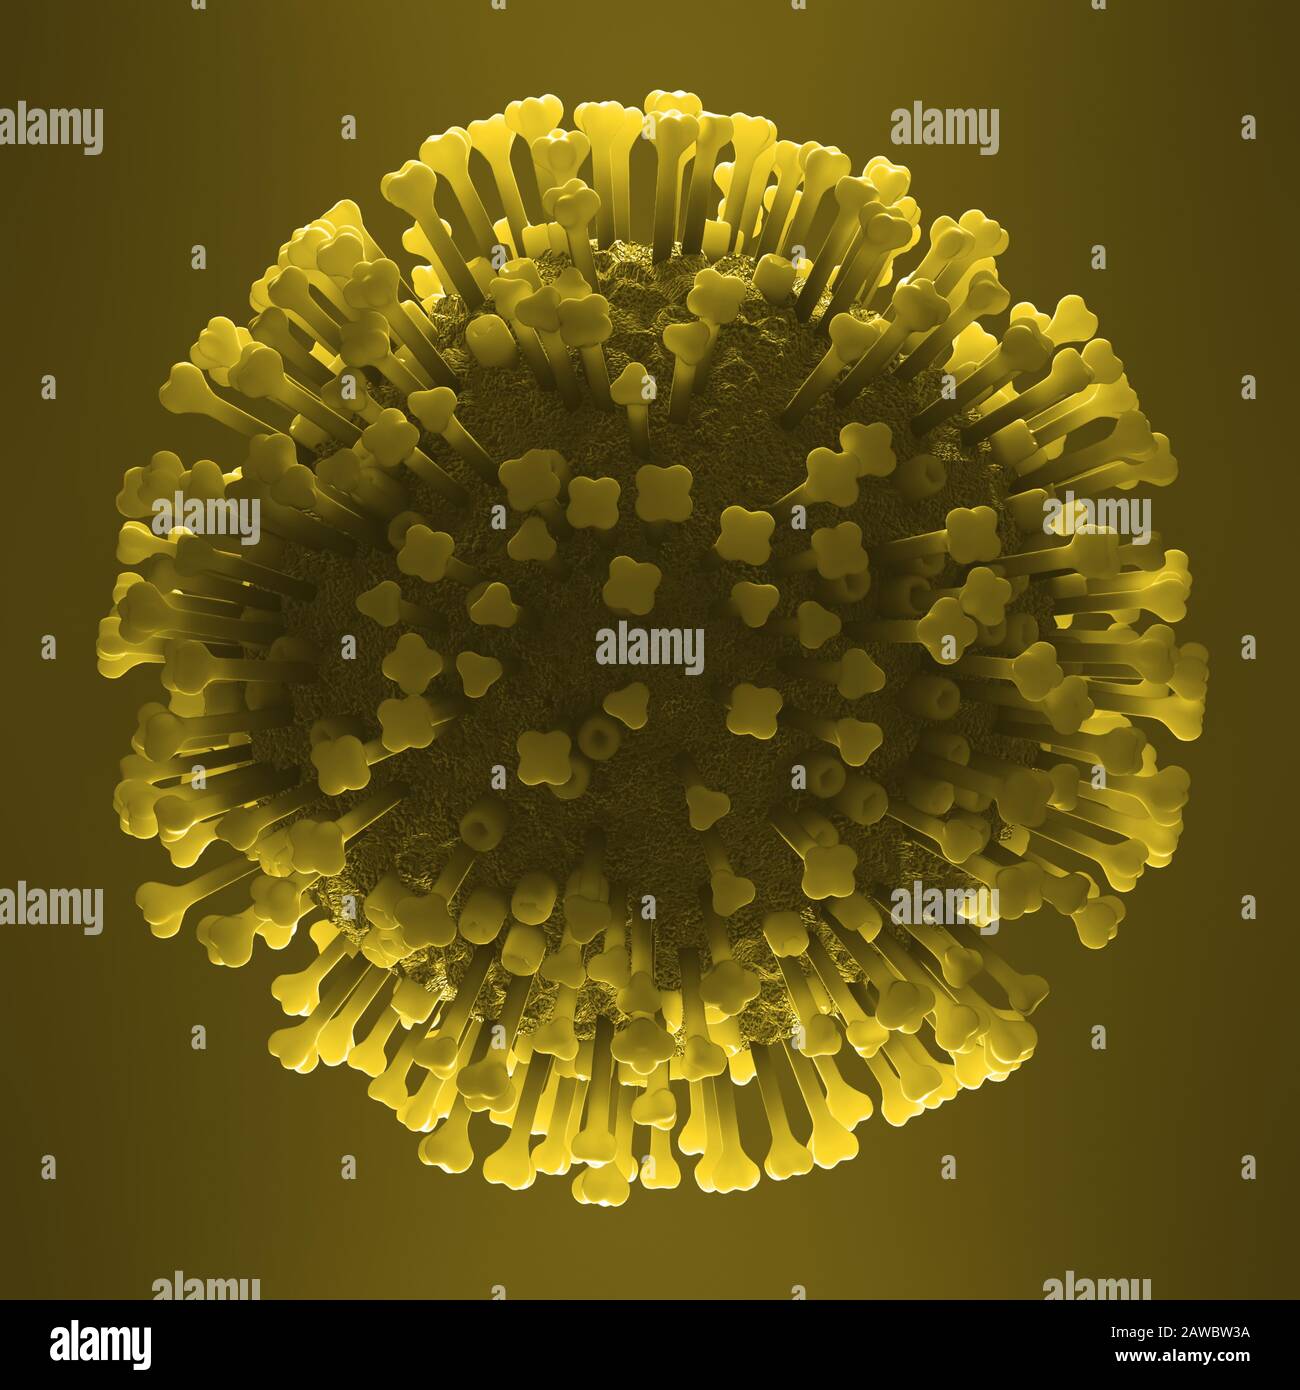 Particule du virus de l'influenza, illustration Banque D'Images